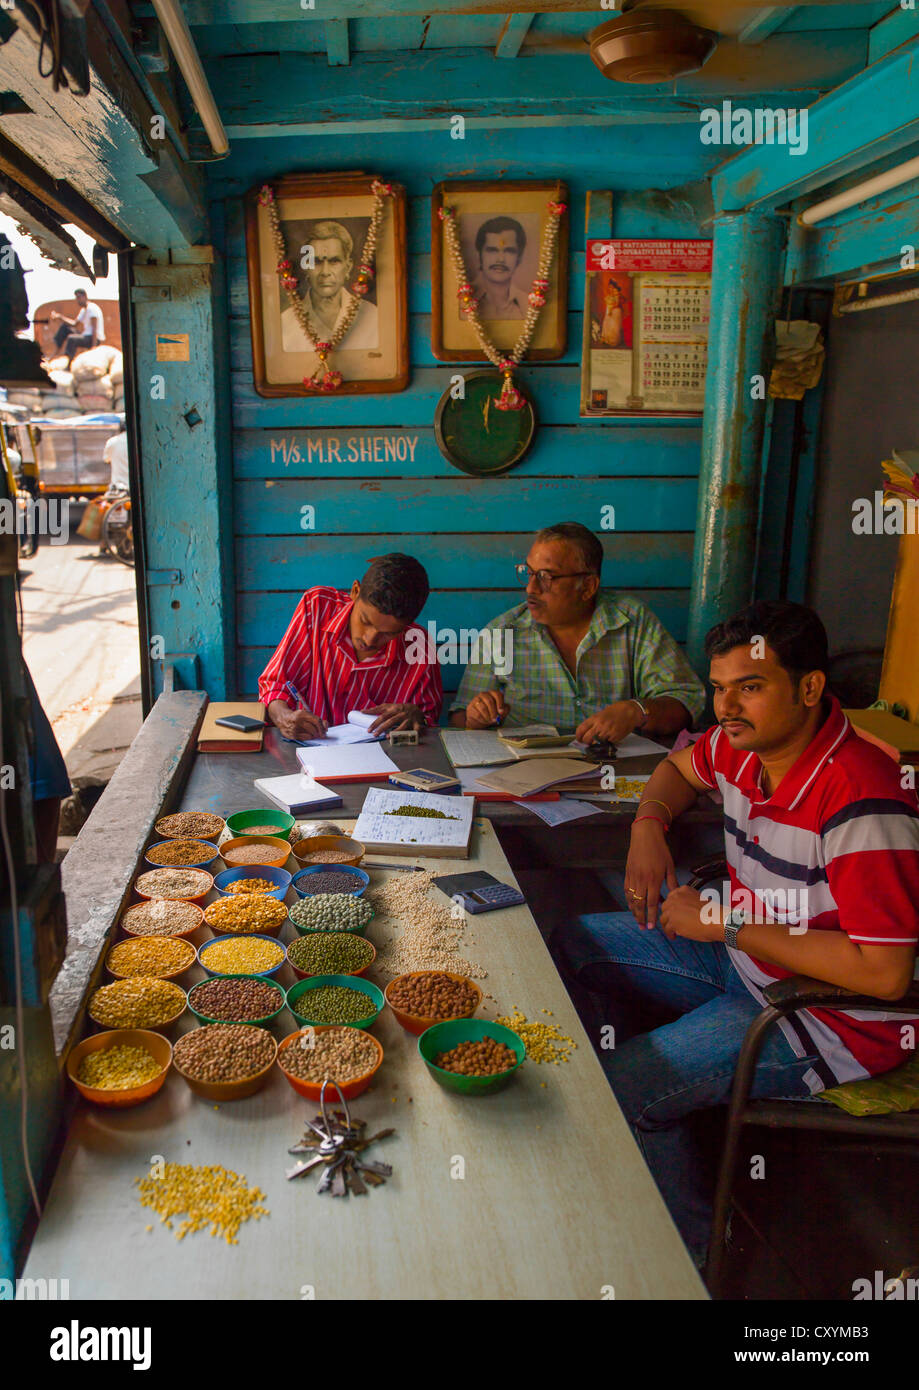 Ventes de céréales à travailler sur leurs affaires derrière leurs étals dans leur magasin, Cochin, Inde Banque D'Images